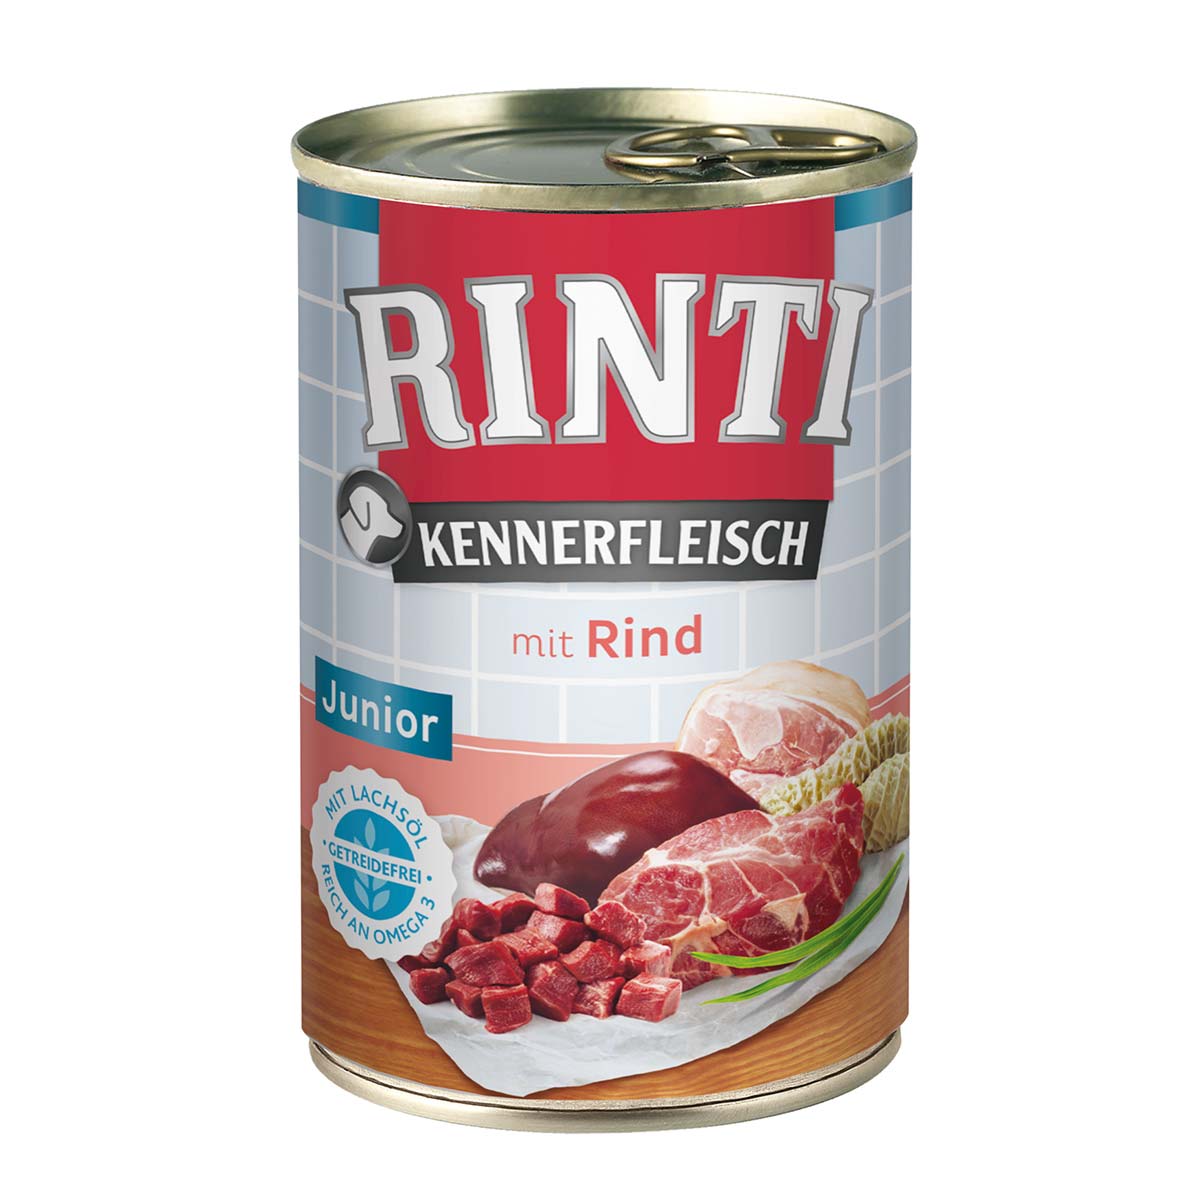 Rinti Kennerfleisch Junior mit Rind 24x400g